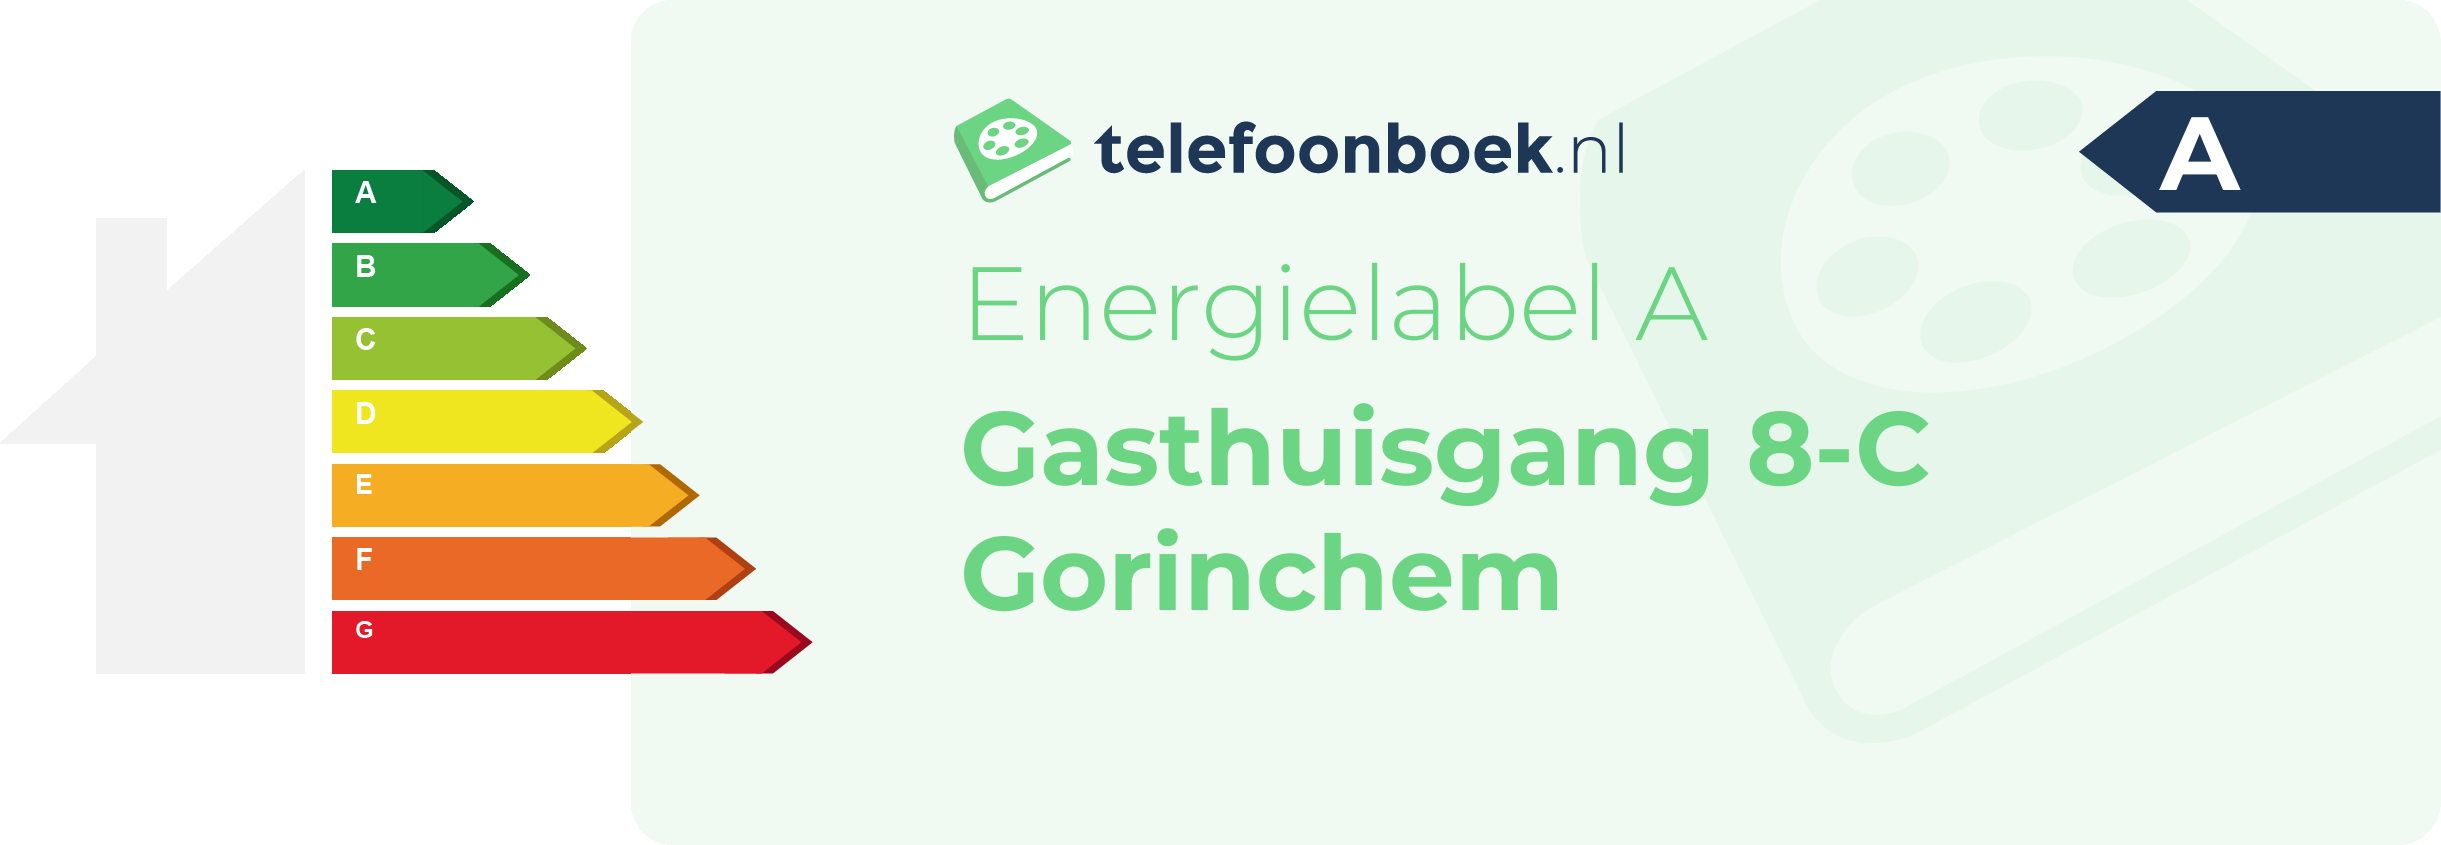 Energielabel Gasthuisgang 8-C Gorinchem